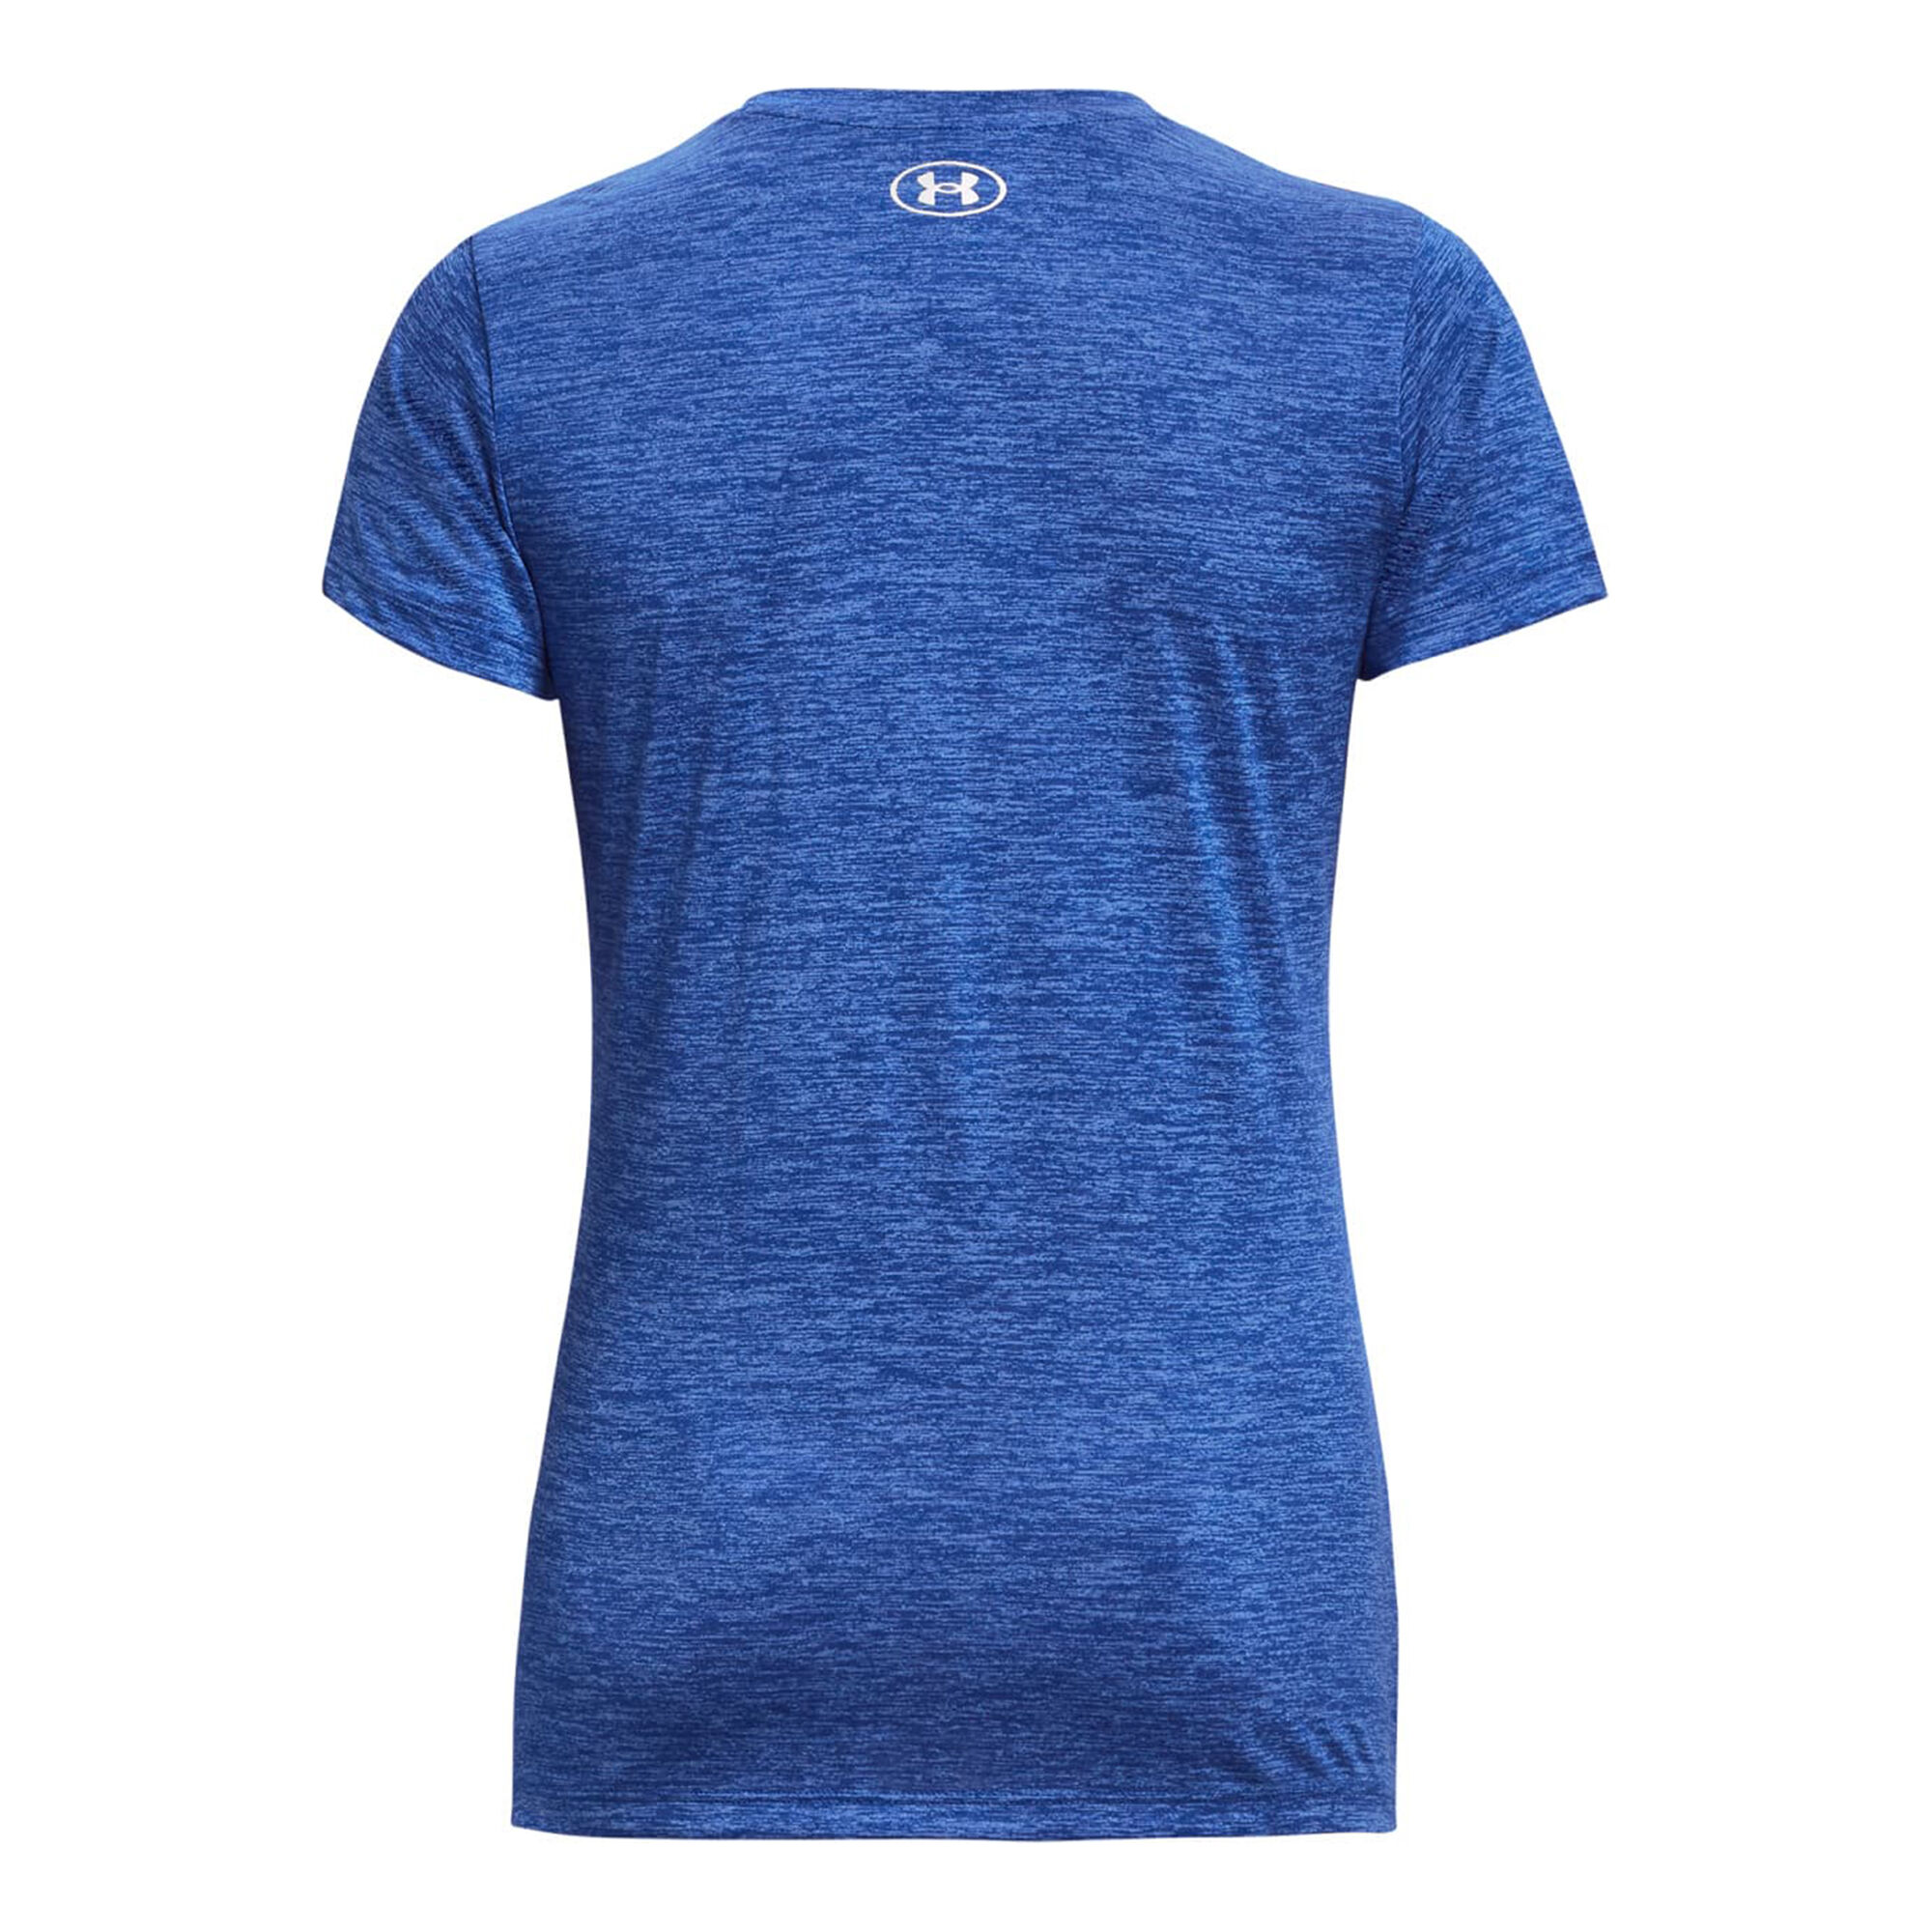 Buy Under Armour Tech Twist T-Shirt Women Blue online